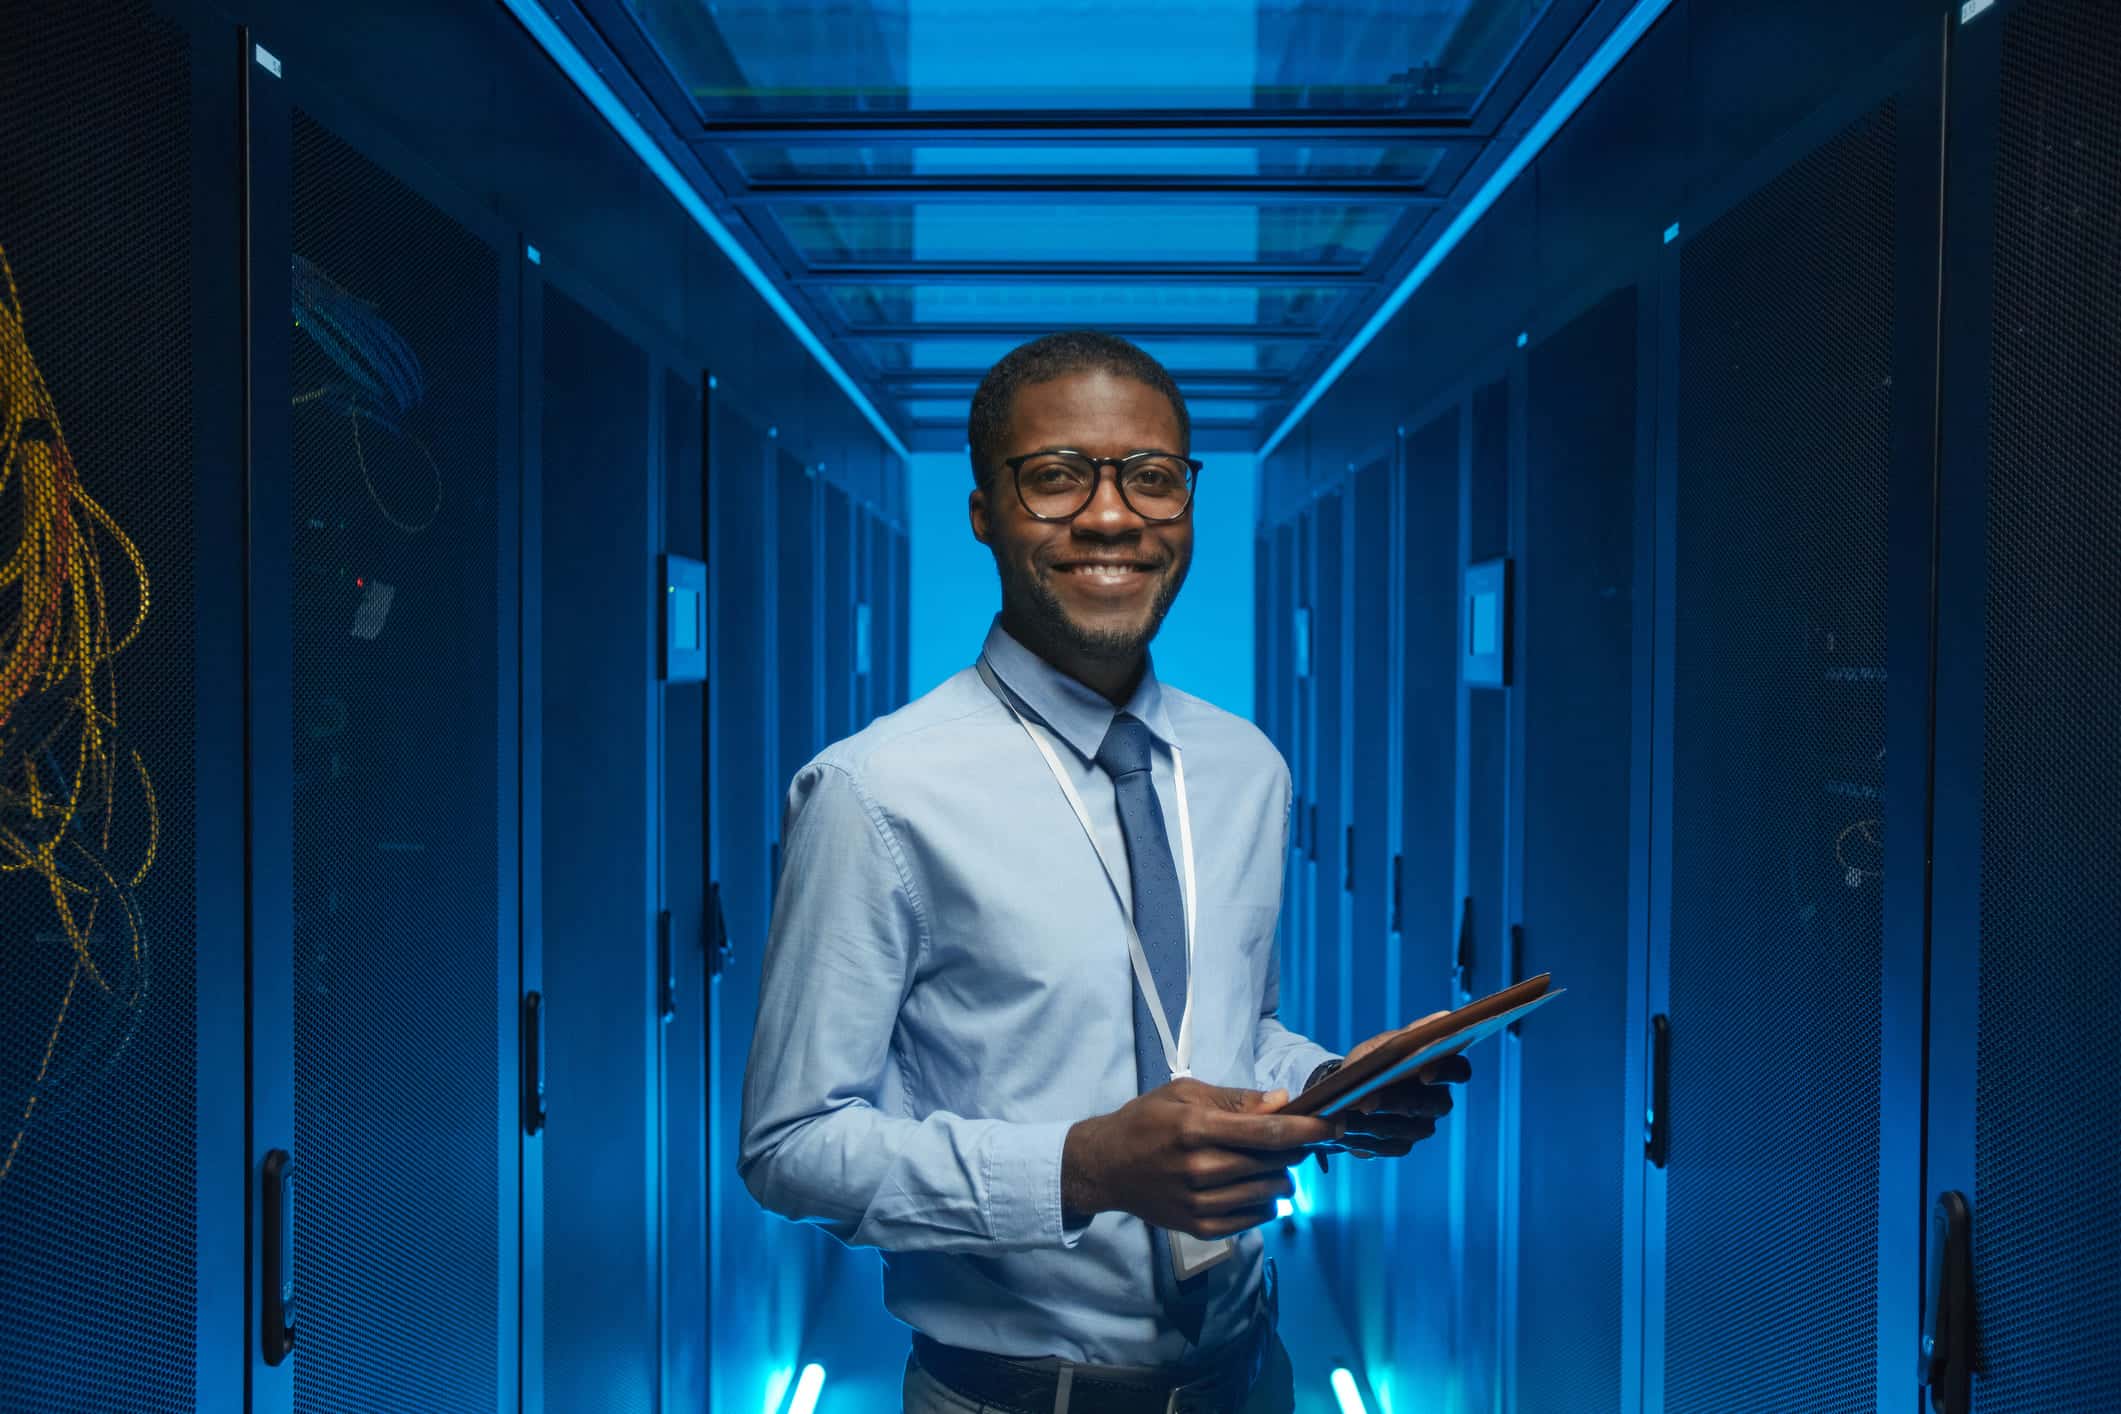 IT technician in a blue server room.